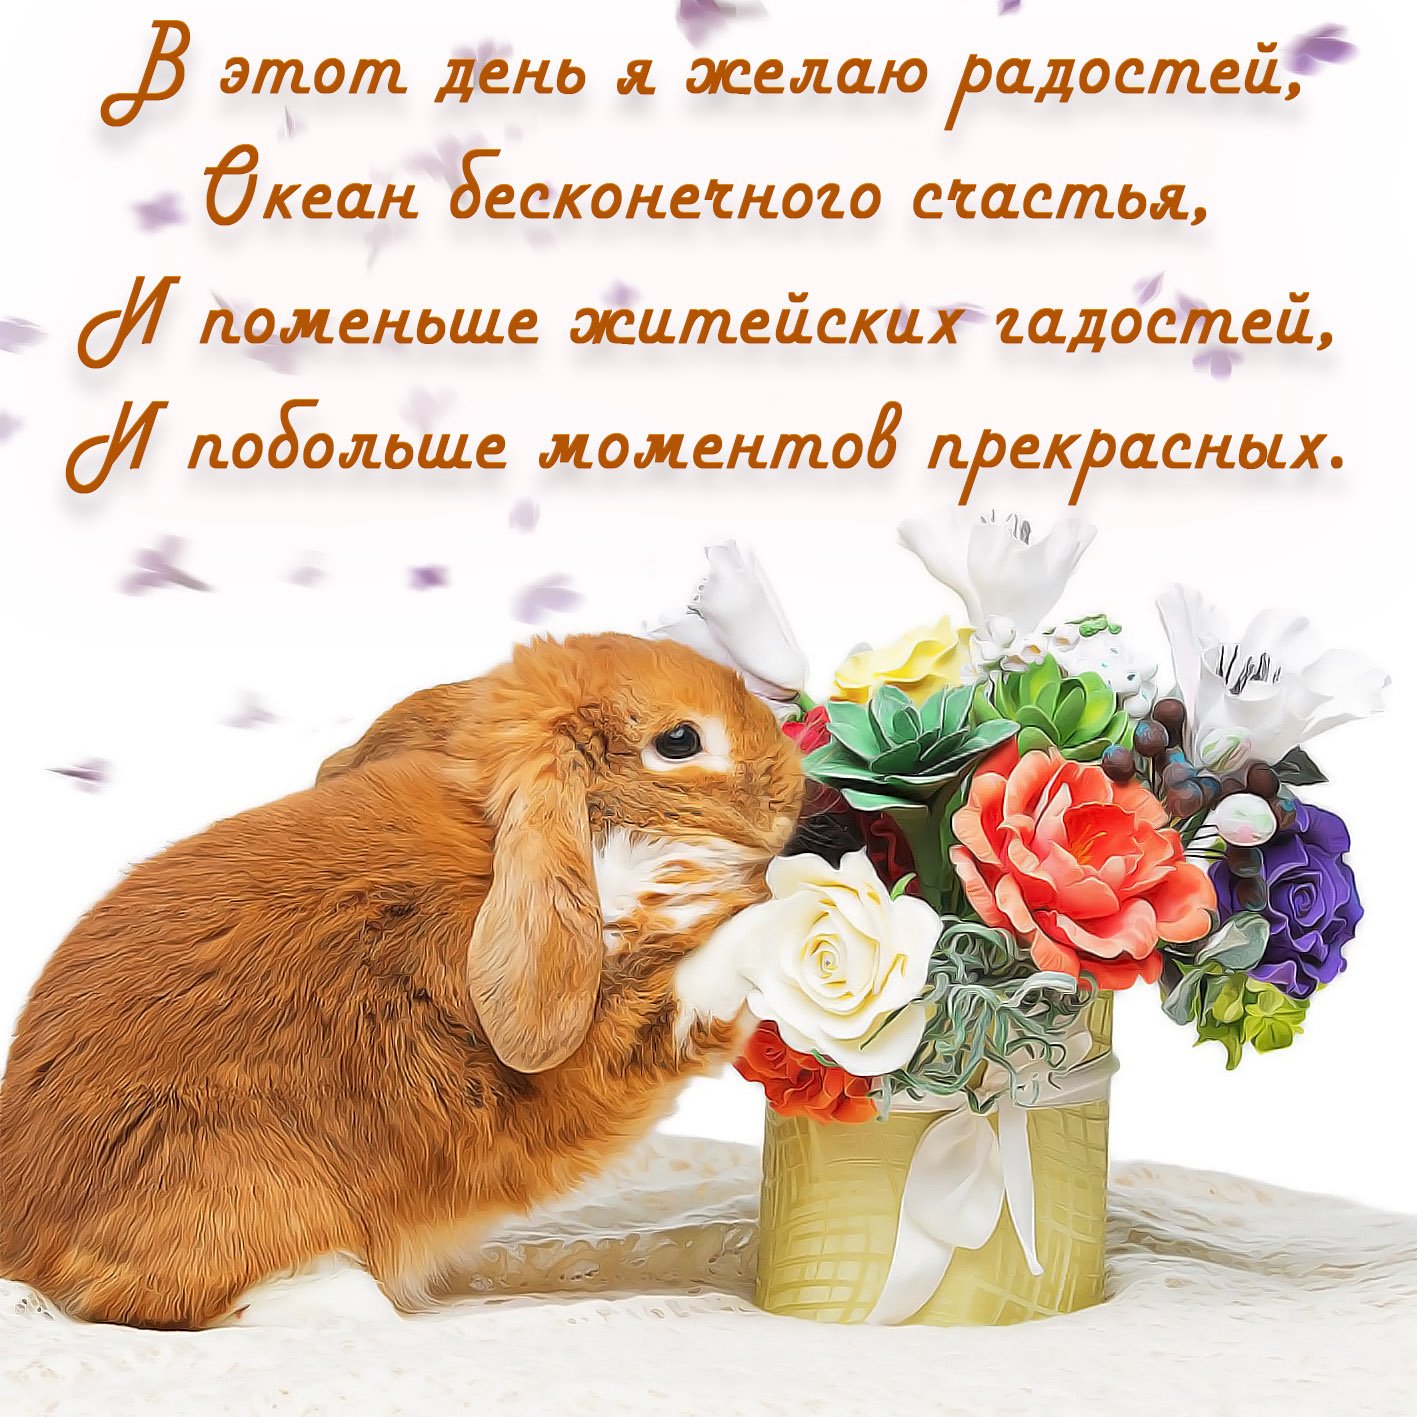 Рыжий кролик с букетом цветов и пожелание